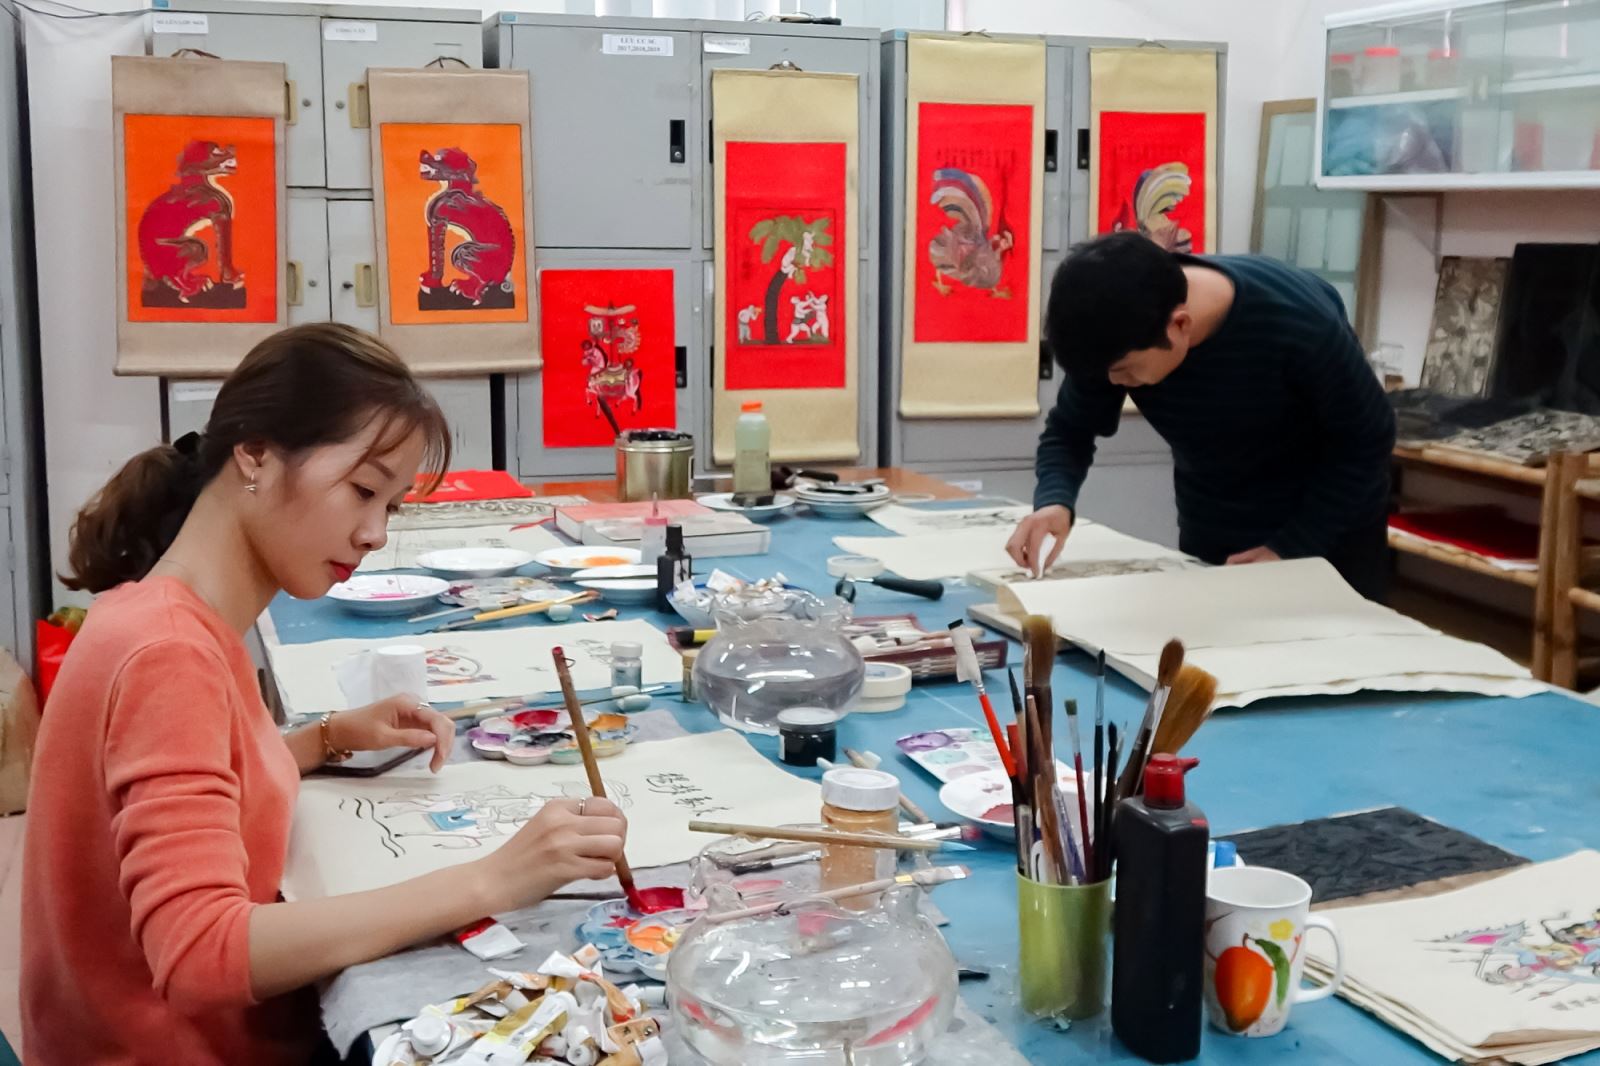 Các họa sỹ trẻ thuộc dự án “ Khôi phục tranh dân gian Kim Hoàng” đang miệt mài phóng tác tranh “Đám cưới Chuột” phục vụ dịp Tết Canh Tý 2020